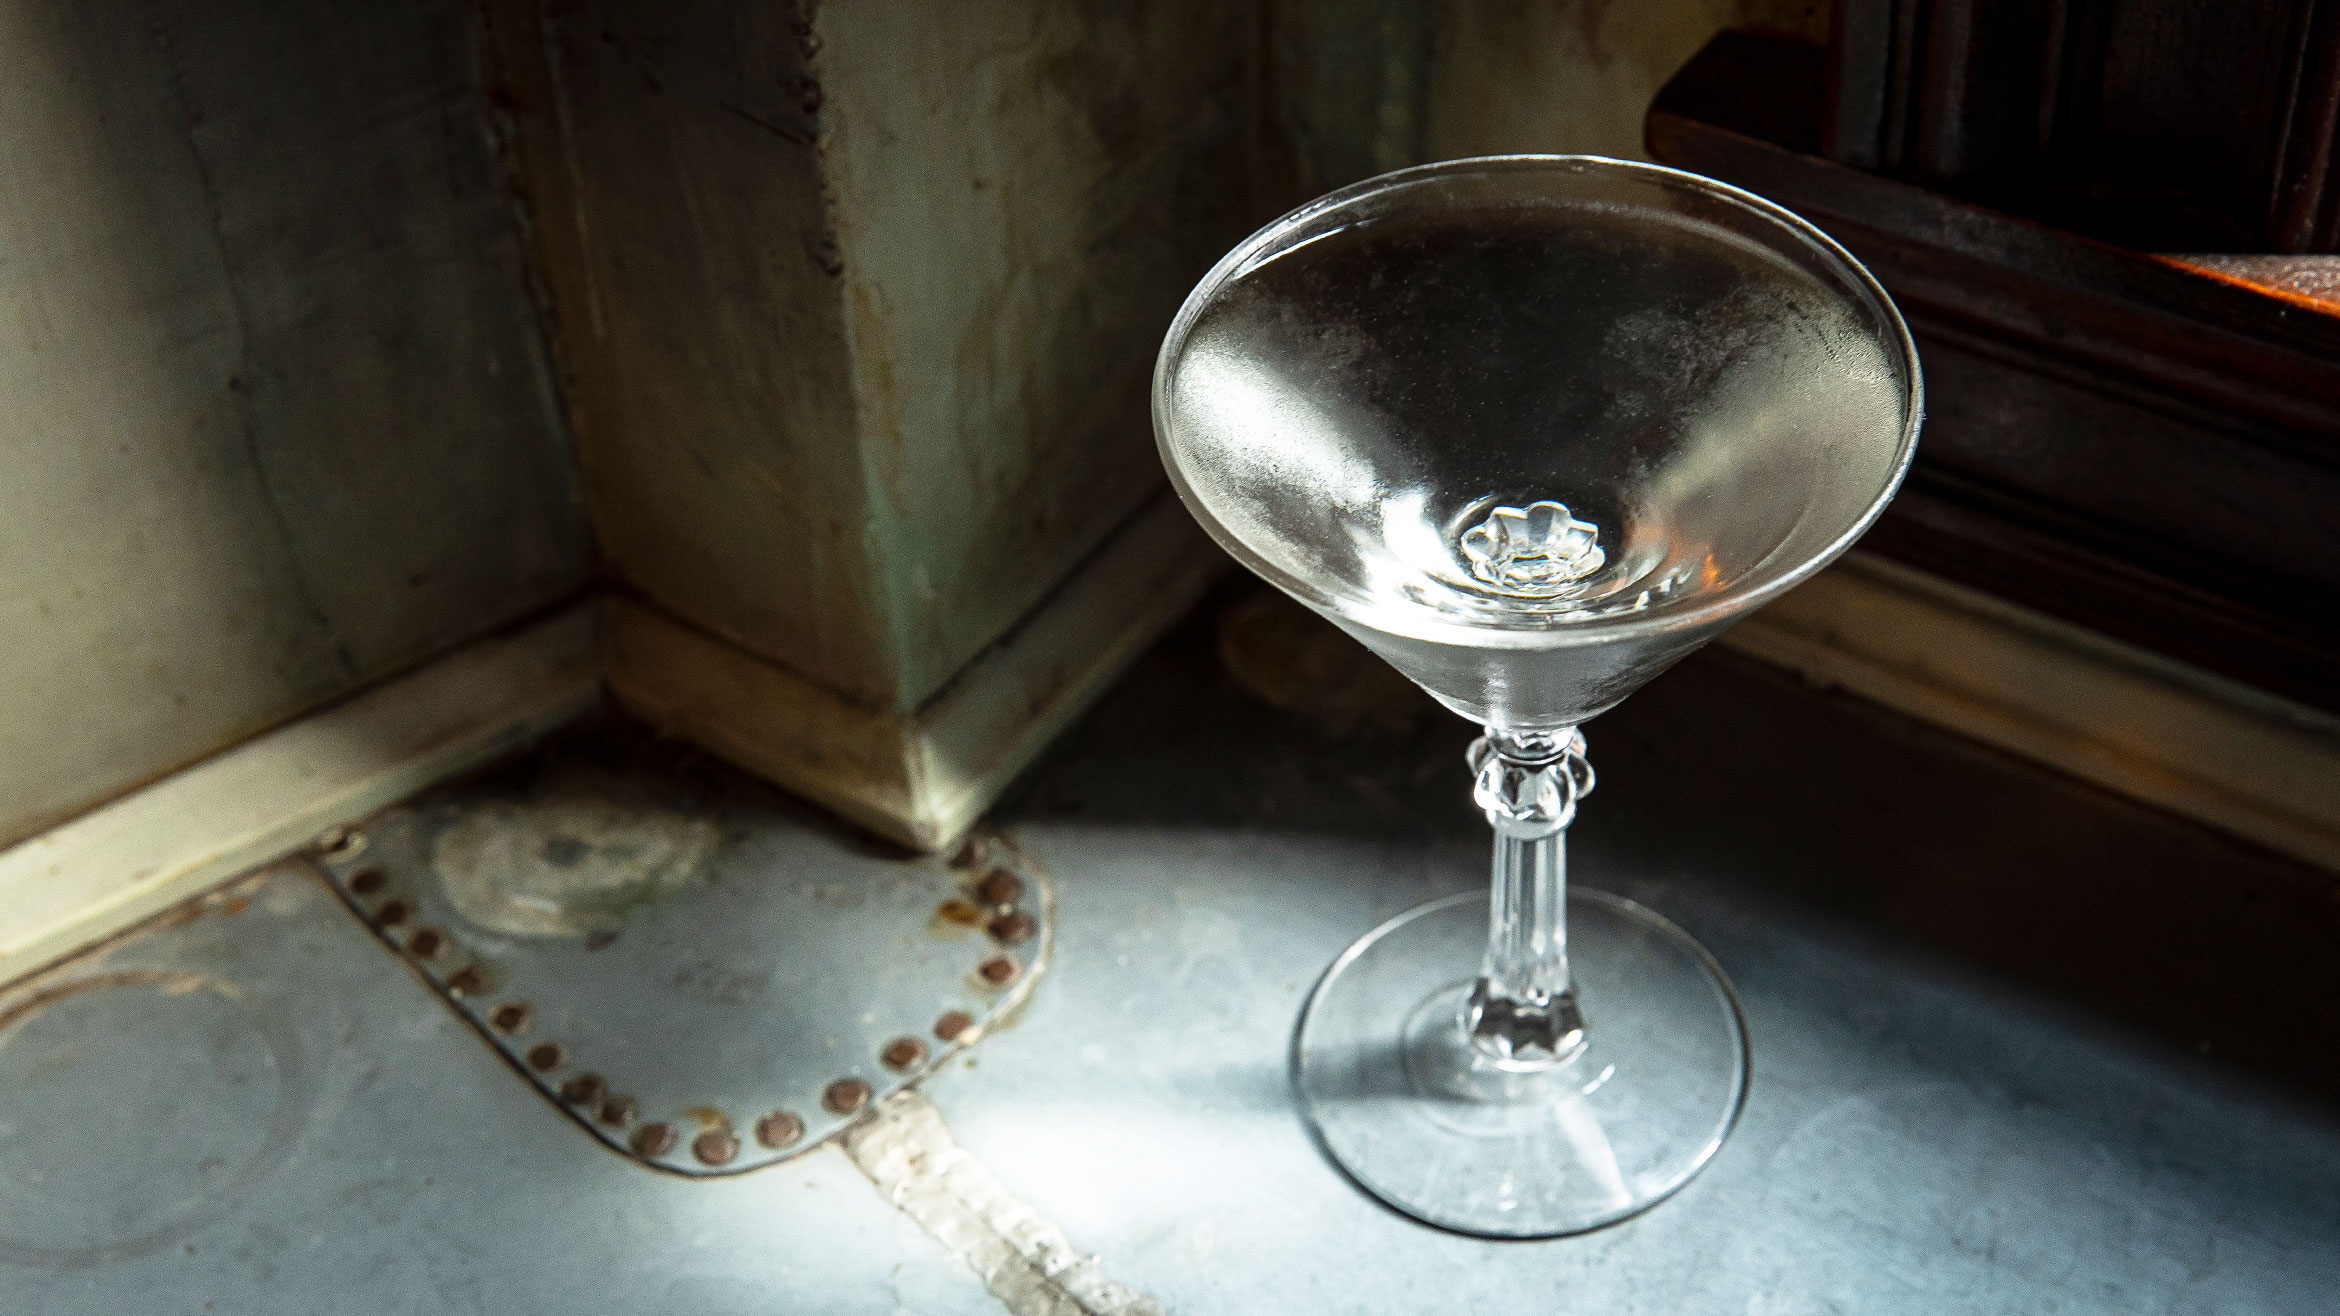 A martini in a martini glass